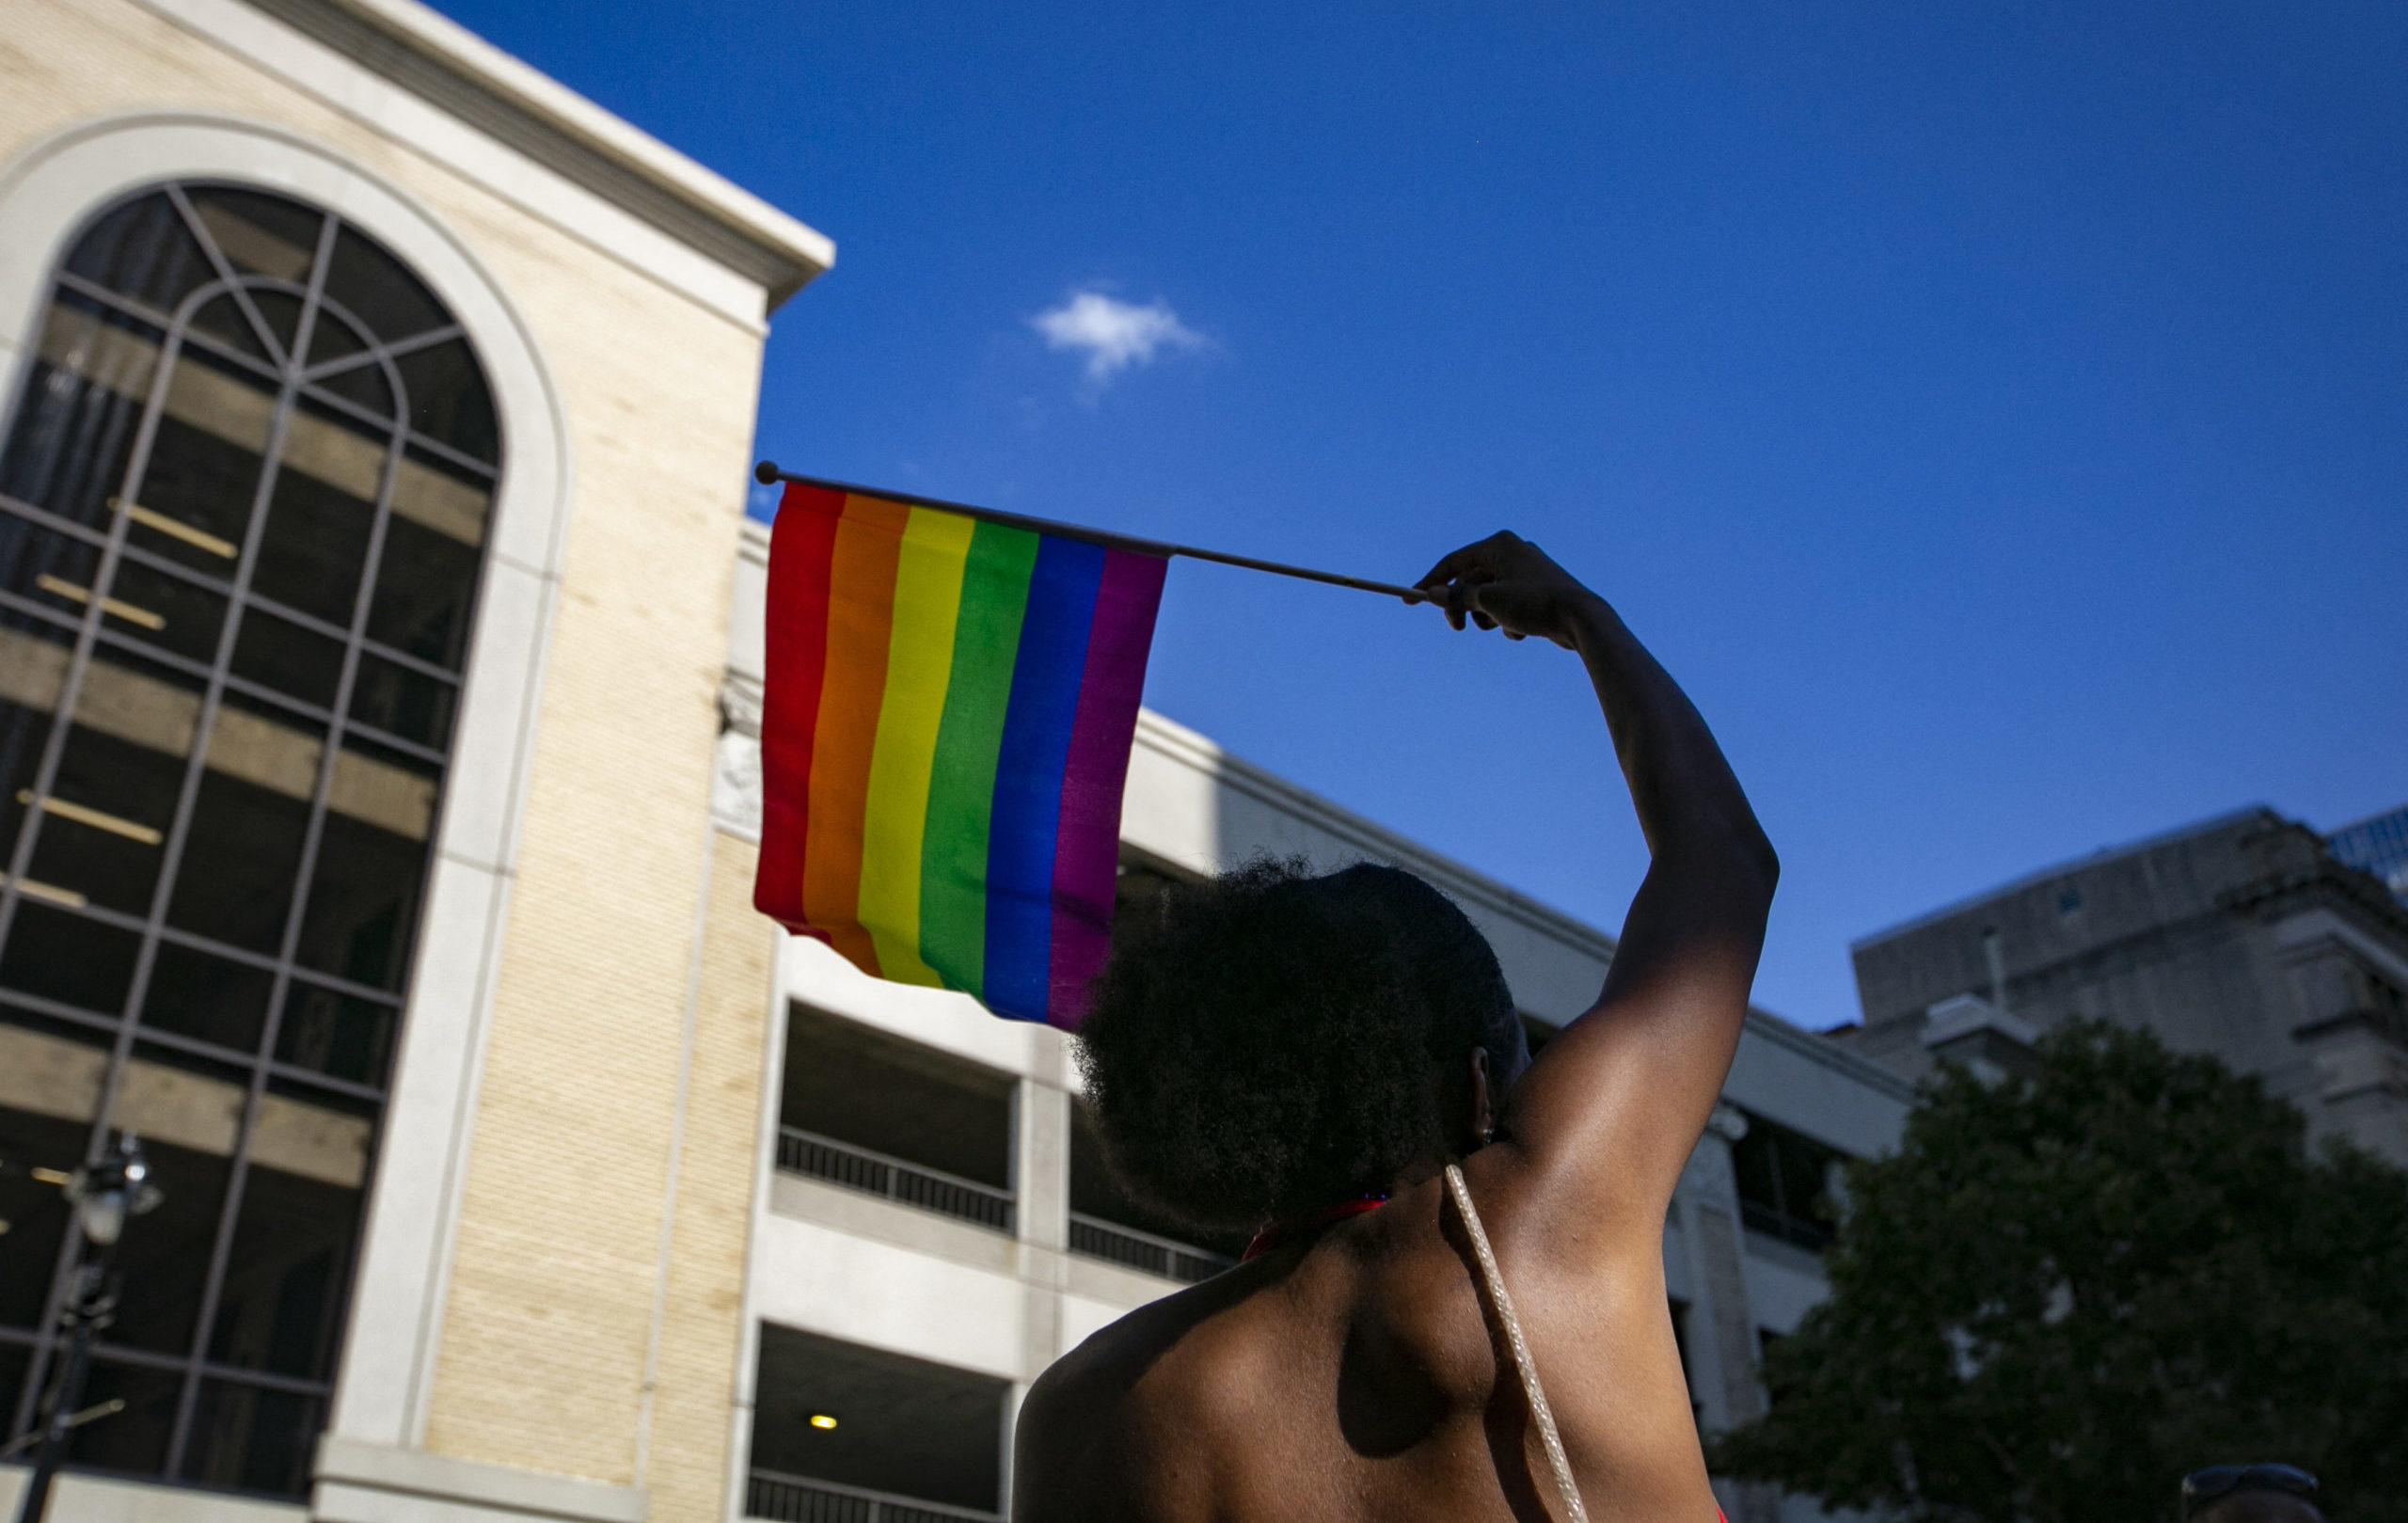 US-PRIDE-LGBTQ-RIGHTS